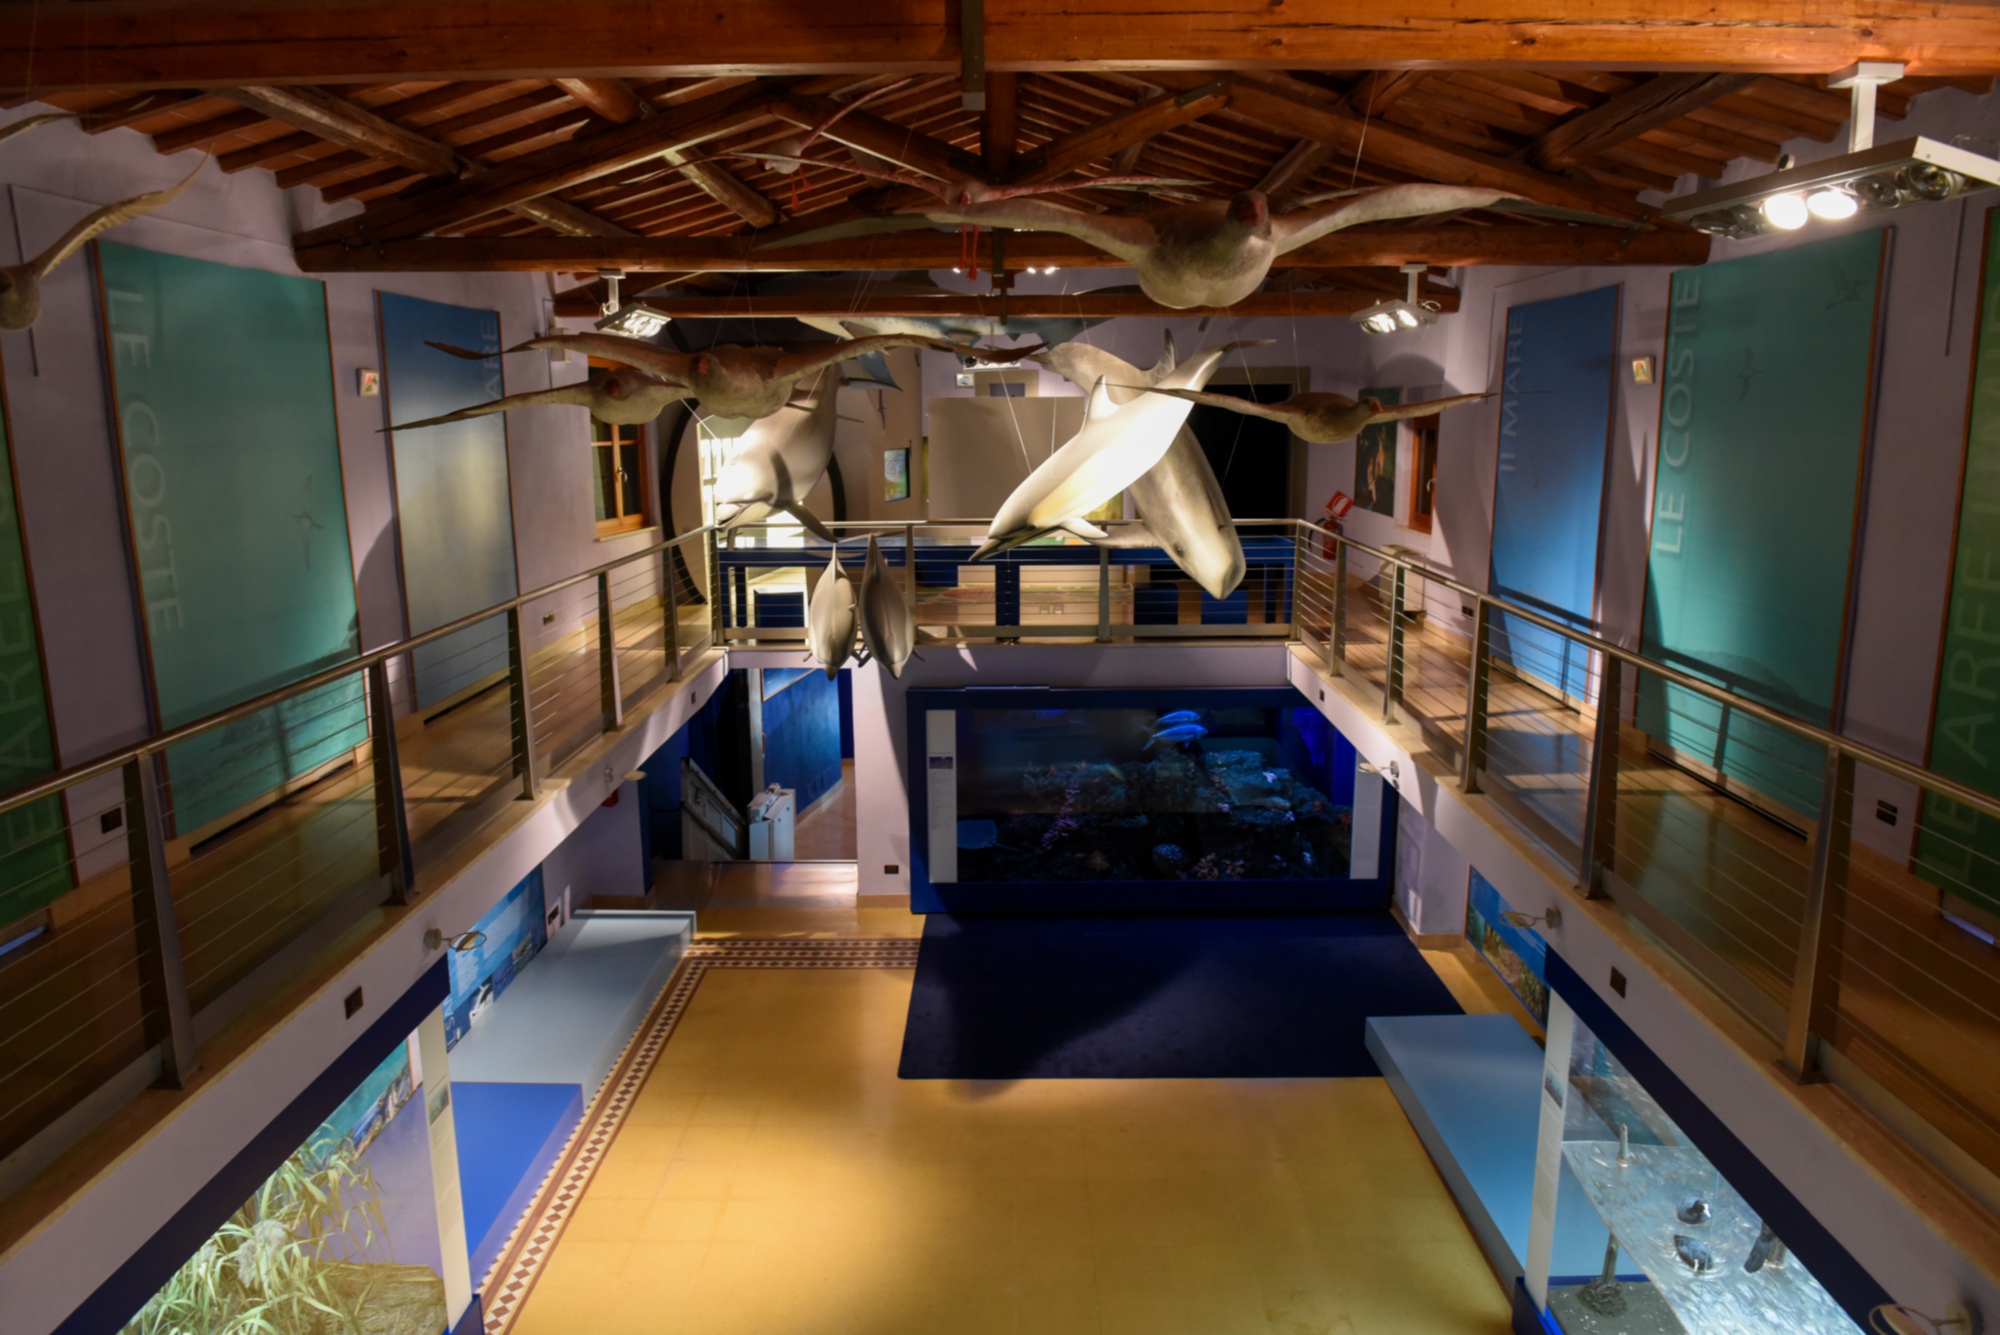 Naturkundemuseum der Maremma